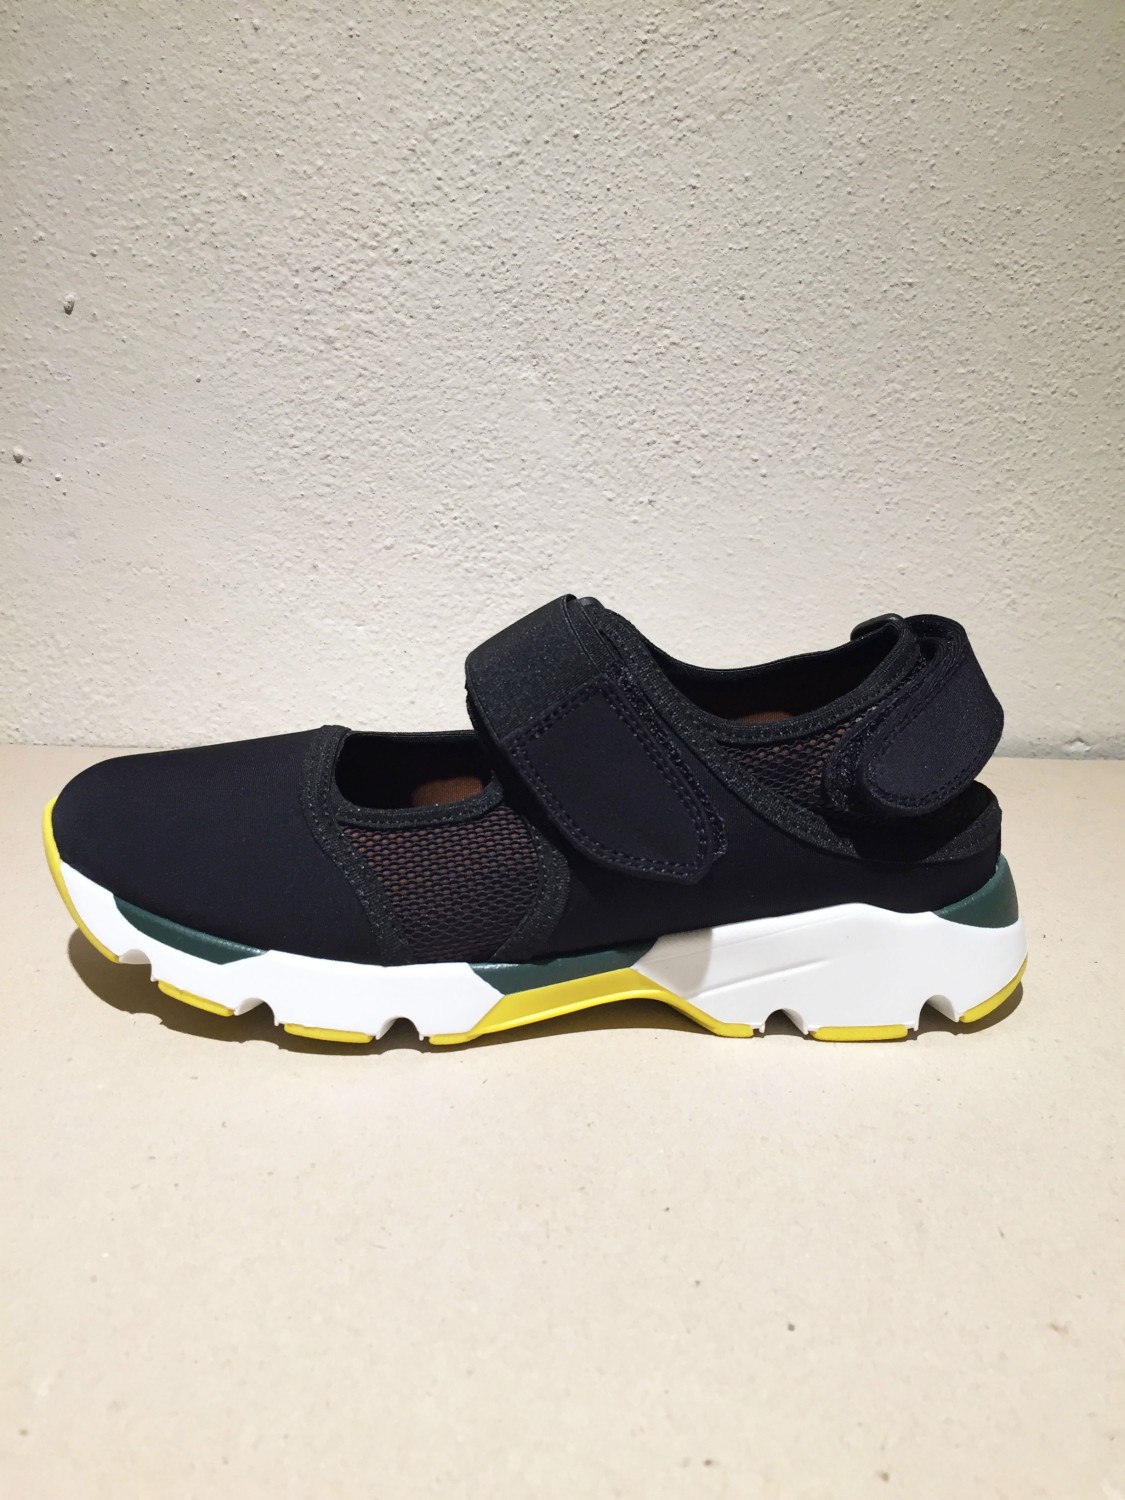 shop Marni  Scarpe: Sneaker con doppia chiusura a velcro, parte centrale in rete con colore a contrasto marrone e nero. number 590